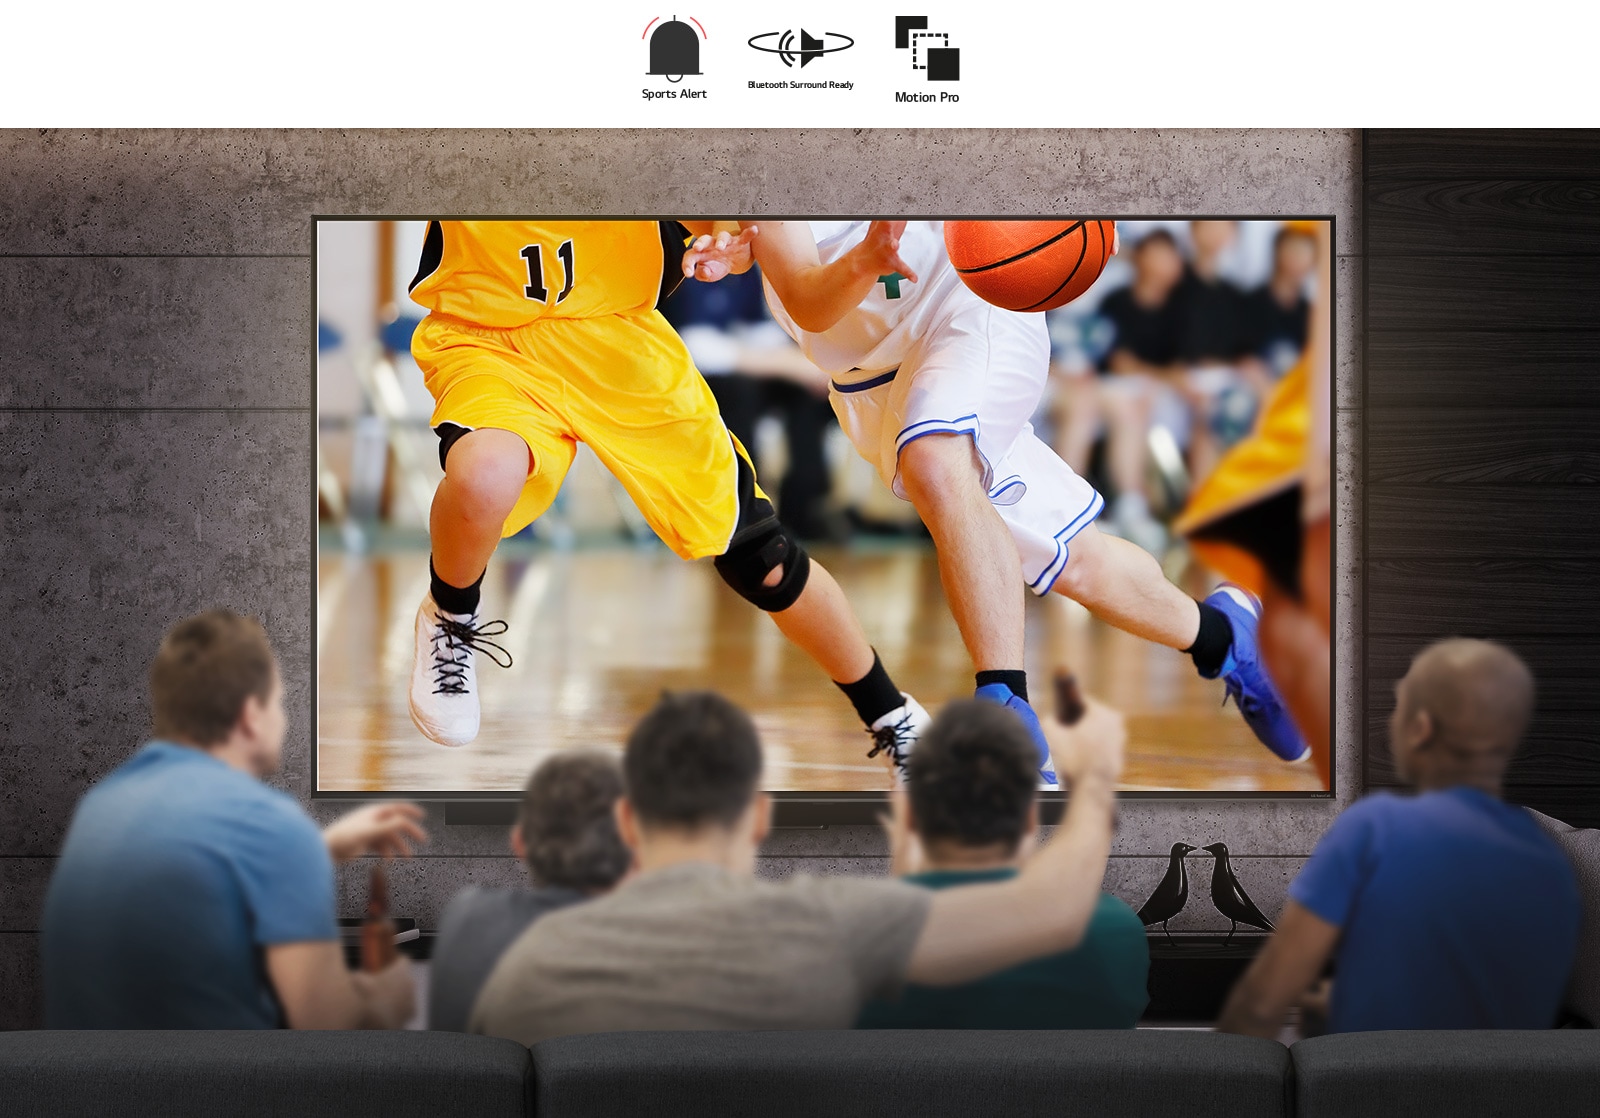 منظر خلفي لمجموعة من الرجال يجلسون أمام تلفاز كبير معلق على الحائط.  يظهر على الشاشة مجموعة من لاعبي كرة السلة. 